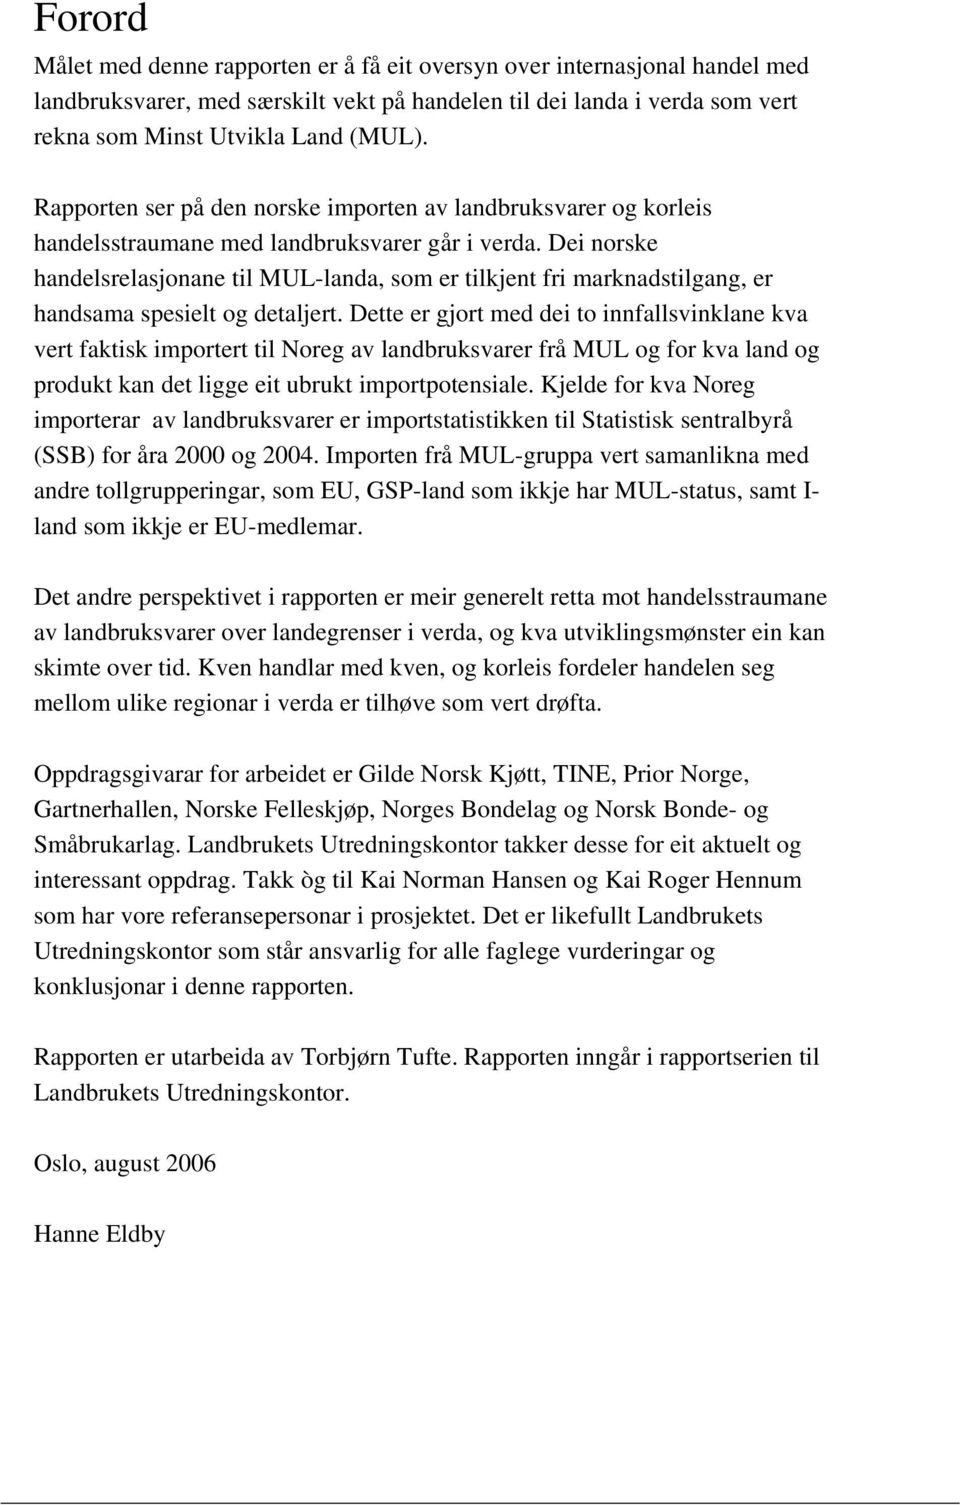 Dei norske handelsrelasjonane til MUL-landa, som er tilkjent fri marknadstilgang, er handsama spesielt og detaljert.